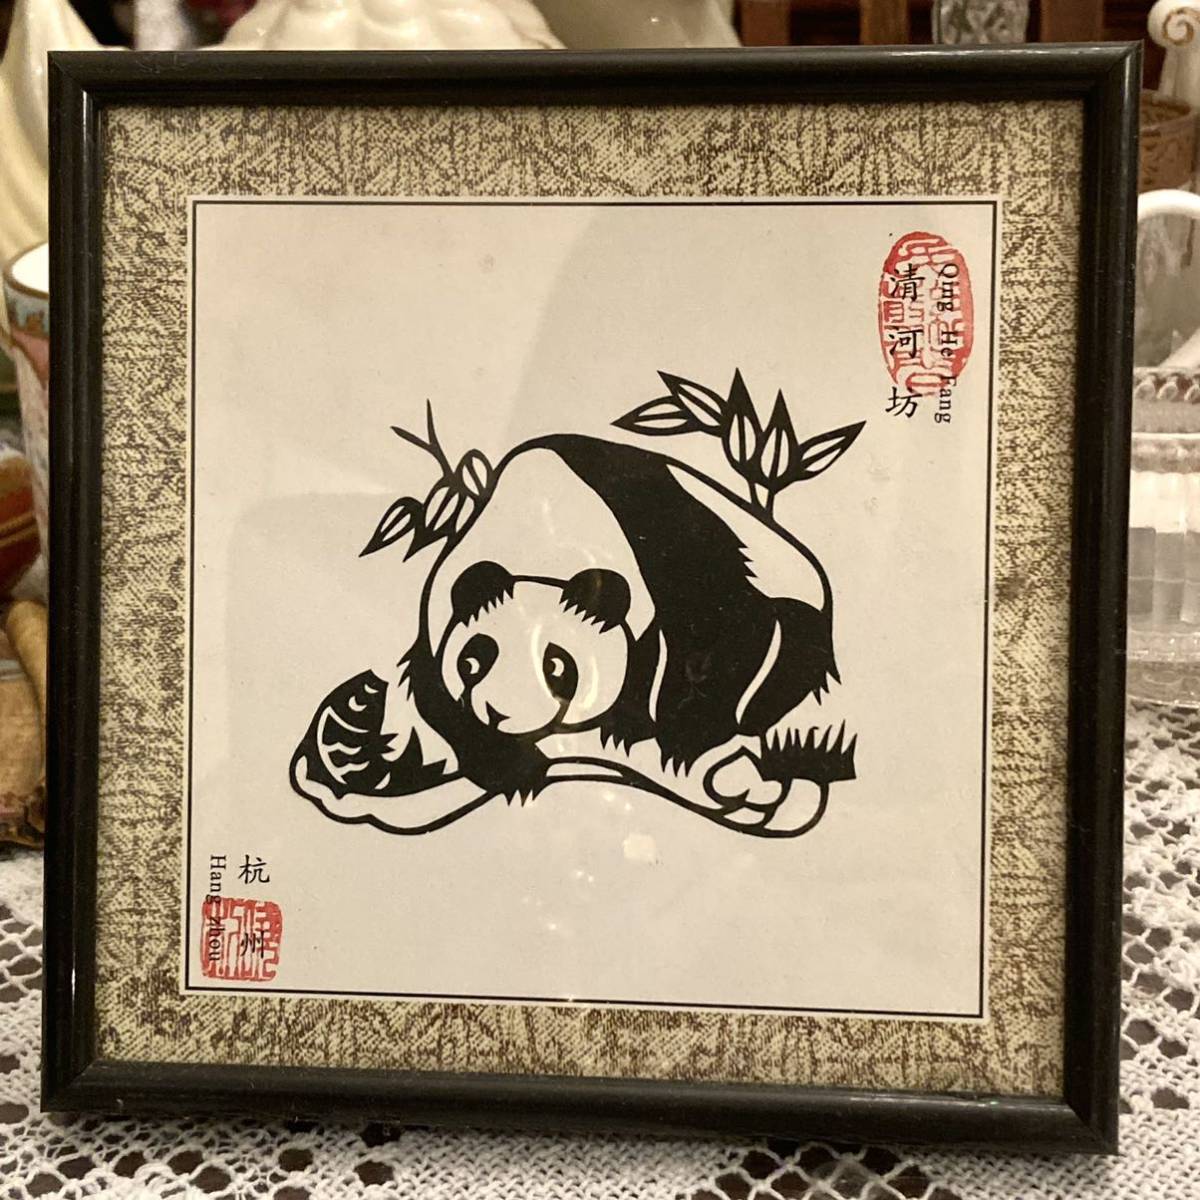 Nouveau Panda inutilisé Chine Papier chinois découpé Peinture miniature Artisanat fait à la main Article encadré E, ouvrages d'art, peinture, Hirie, Kirie